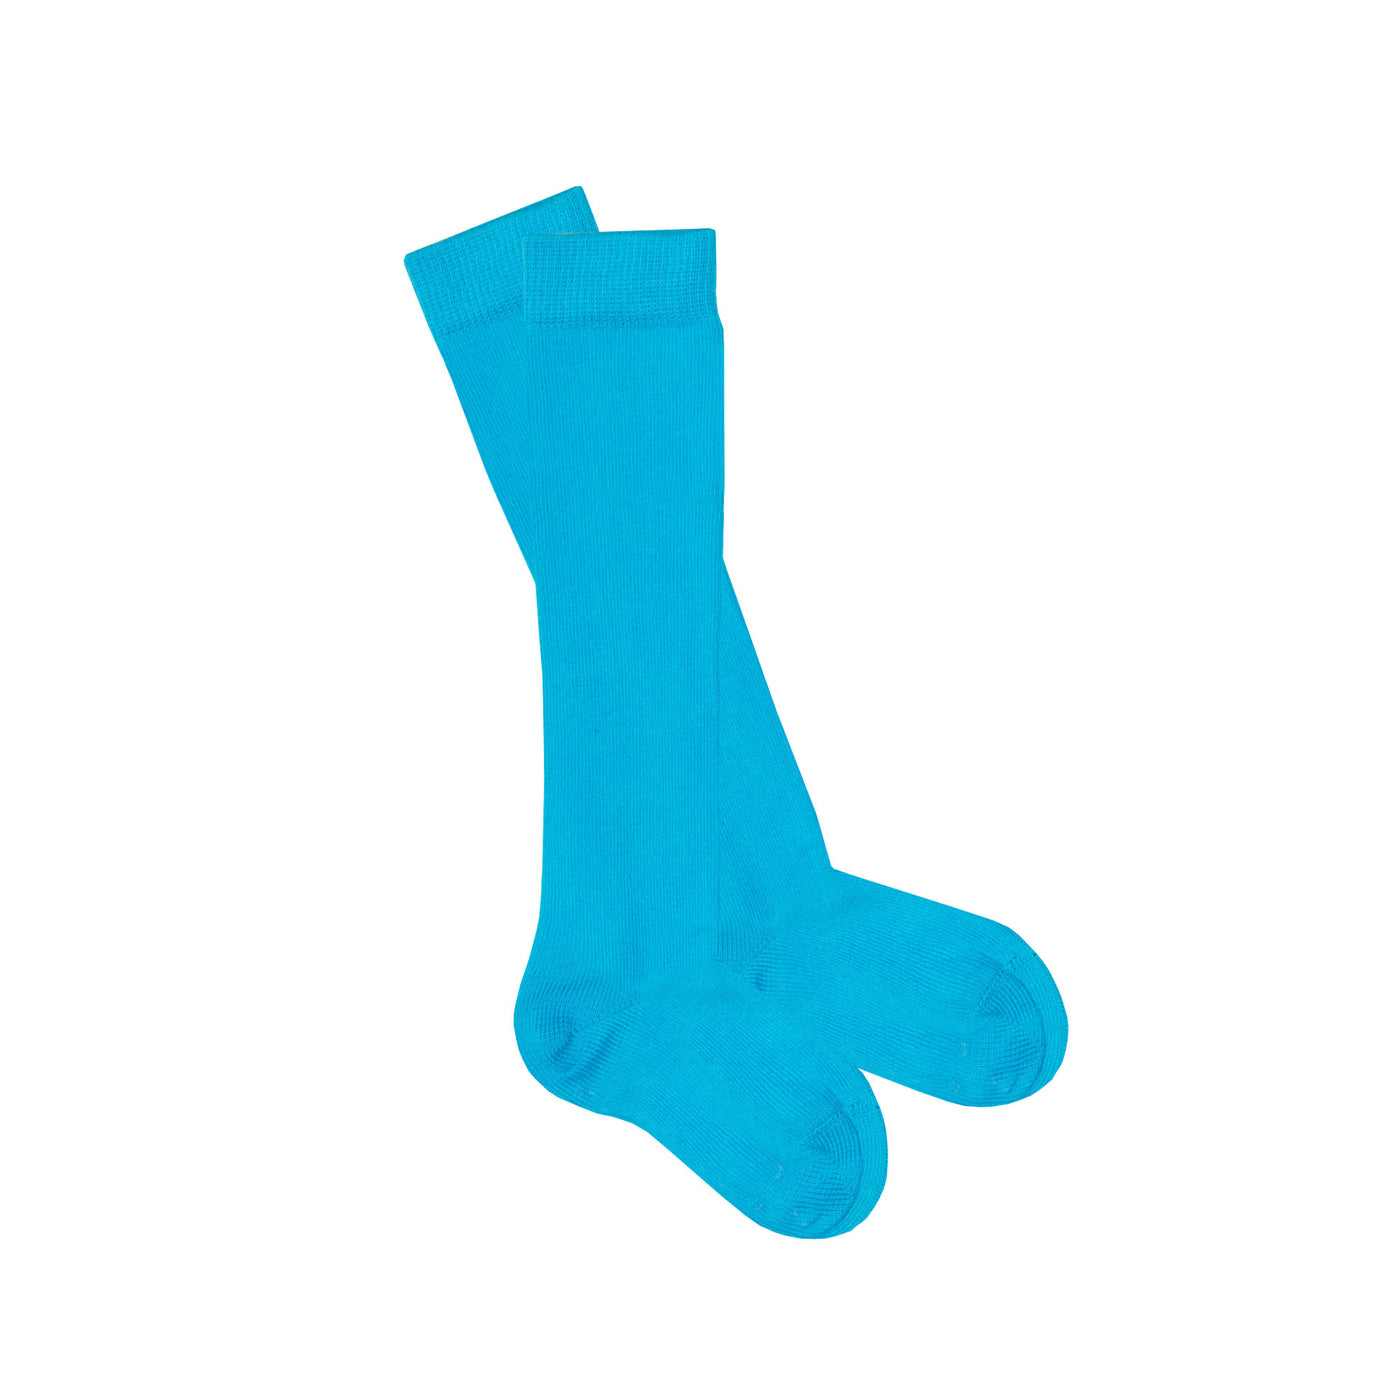 Slugs & Snails Block Colour Adult Unisex Knee Socks - Blue